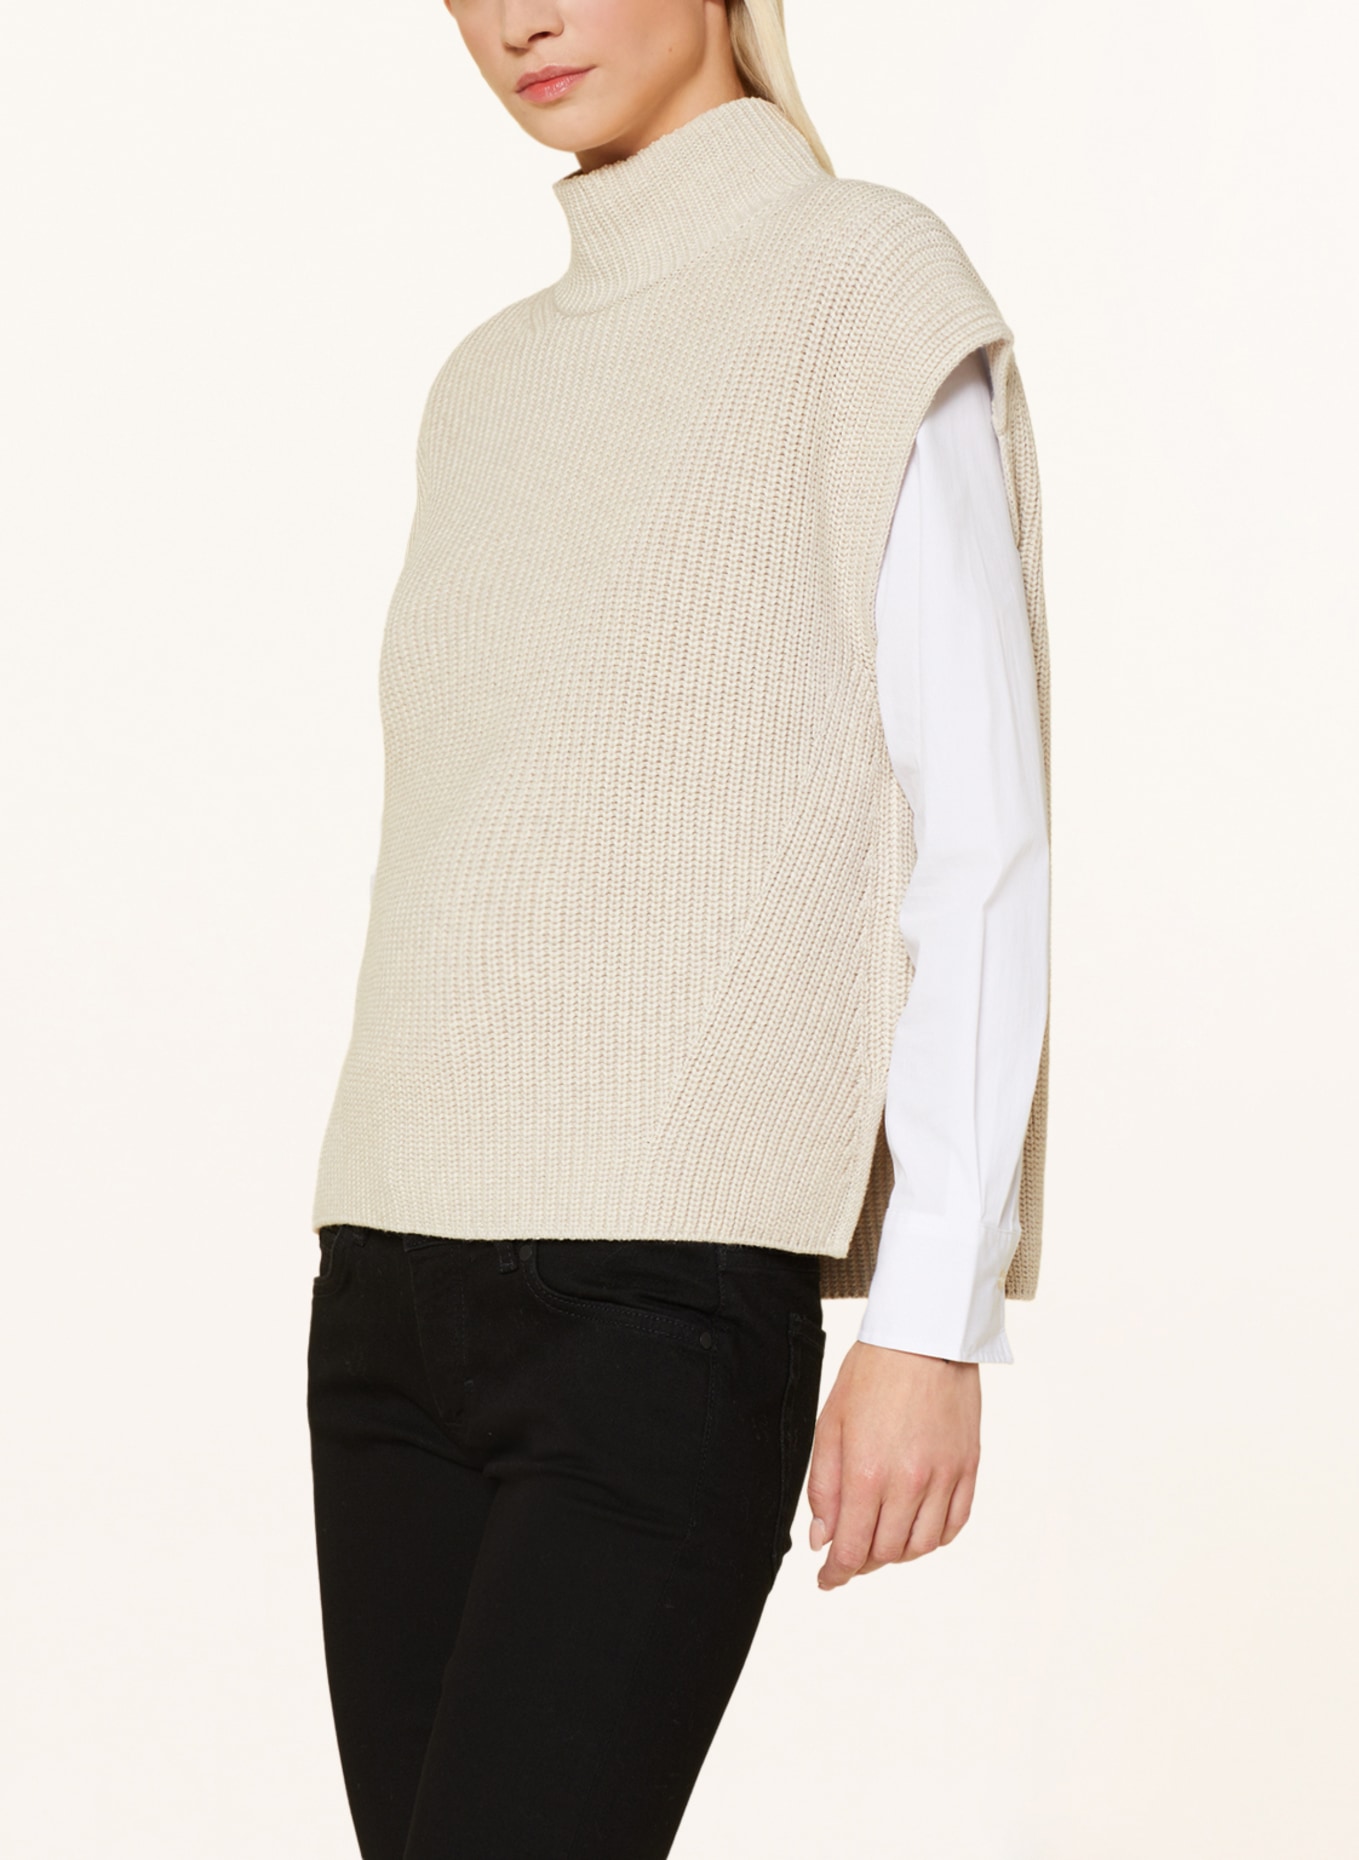 Marc O'Polo Sweater vest, Color: CREAM (Image 4)